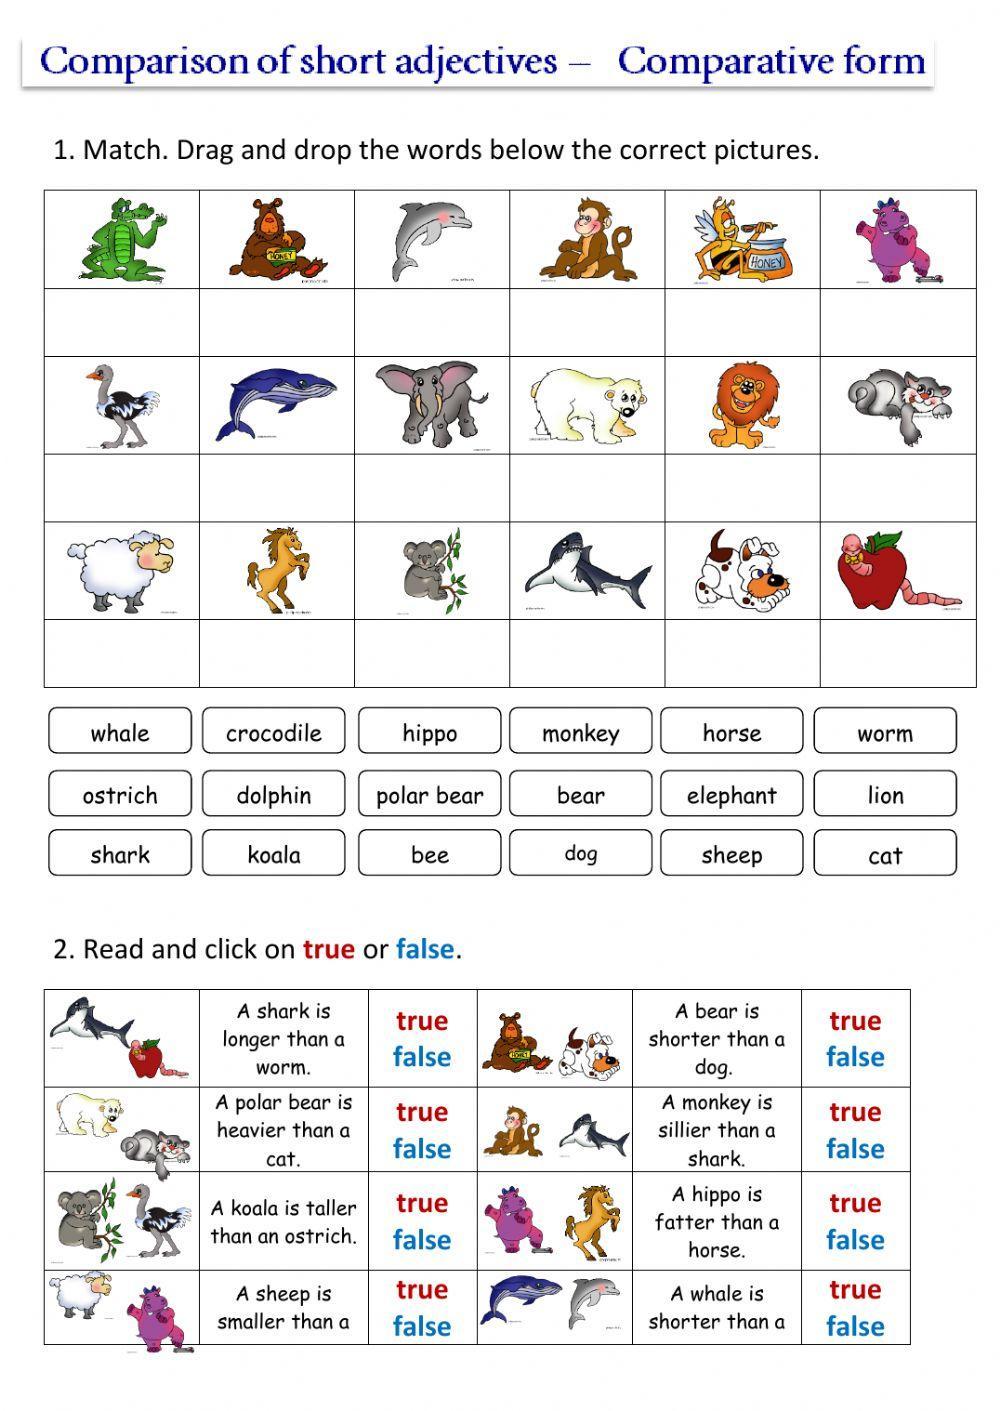 Comparison of short adjectives worksheet | Live Worksheets